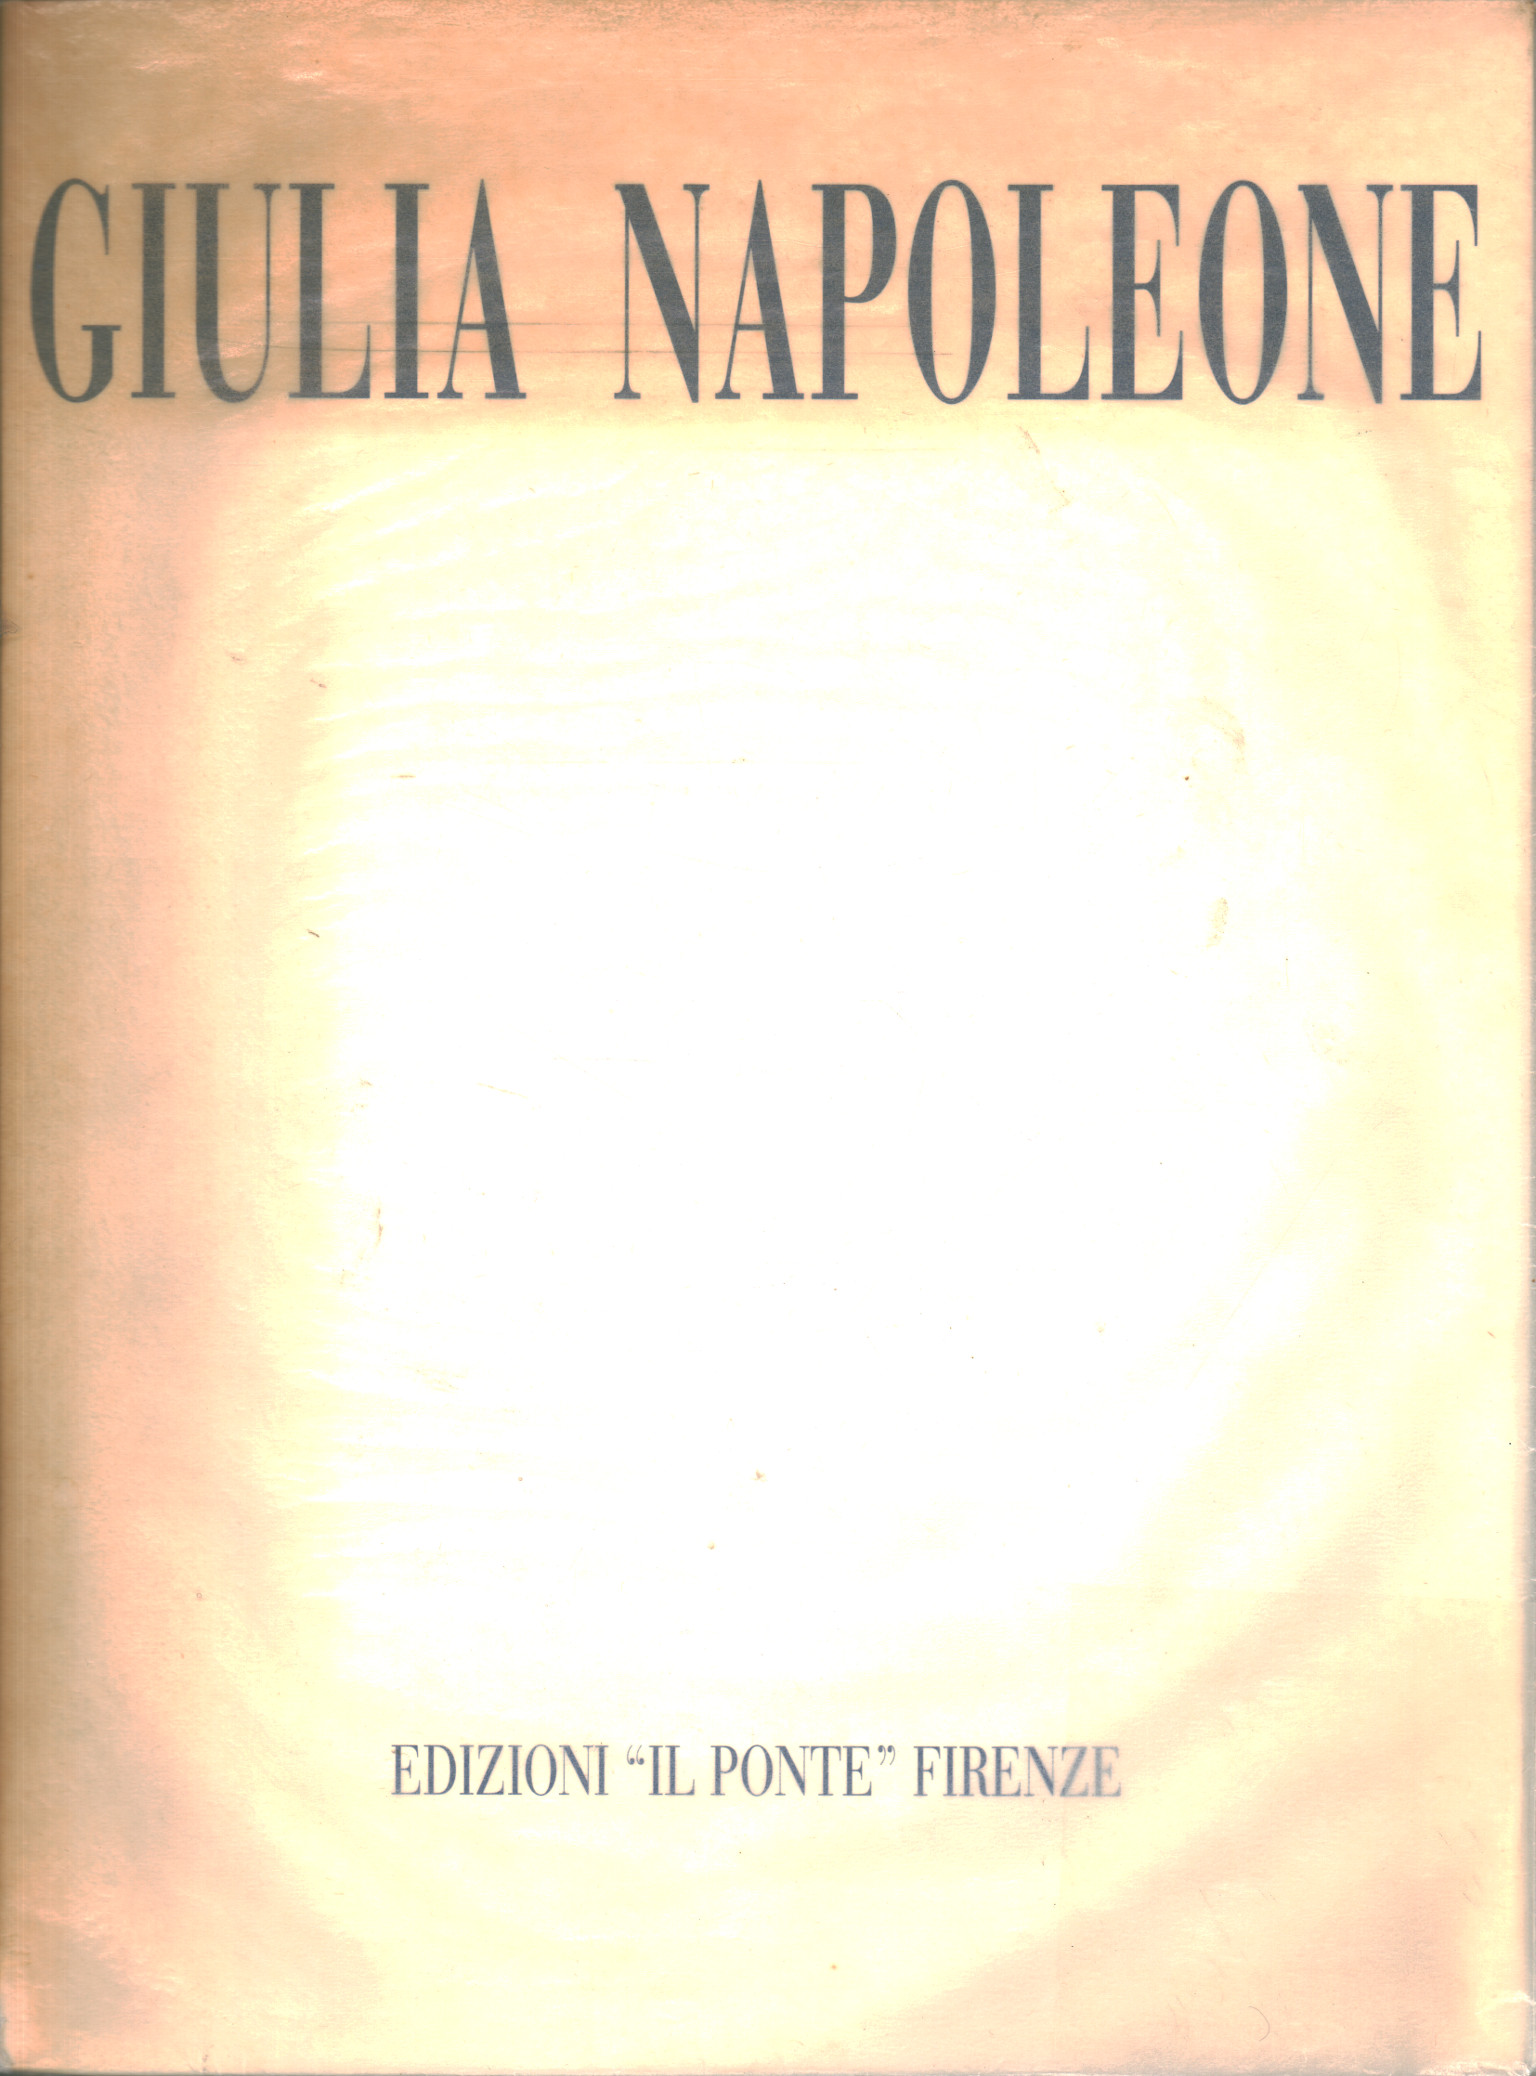 Giulia Napoleone. The perception of light as em, Andrea Alibrandi